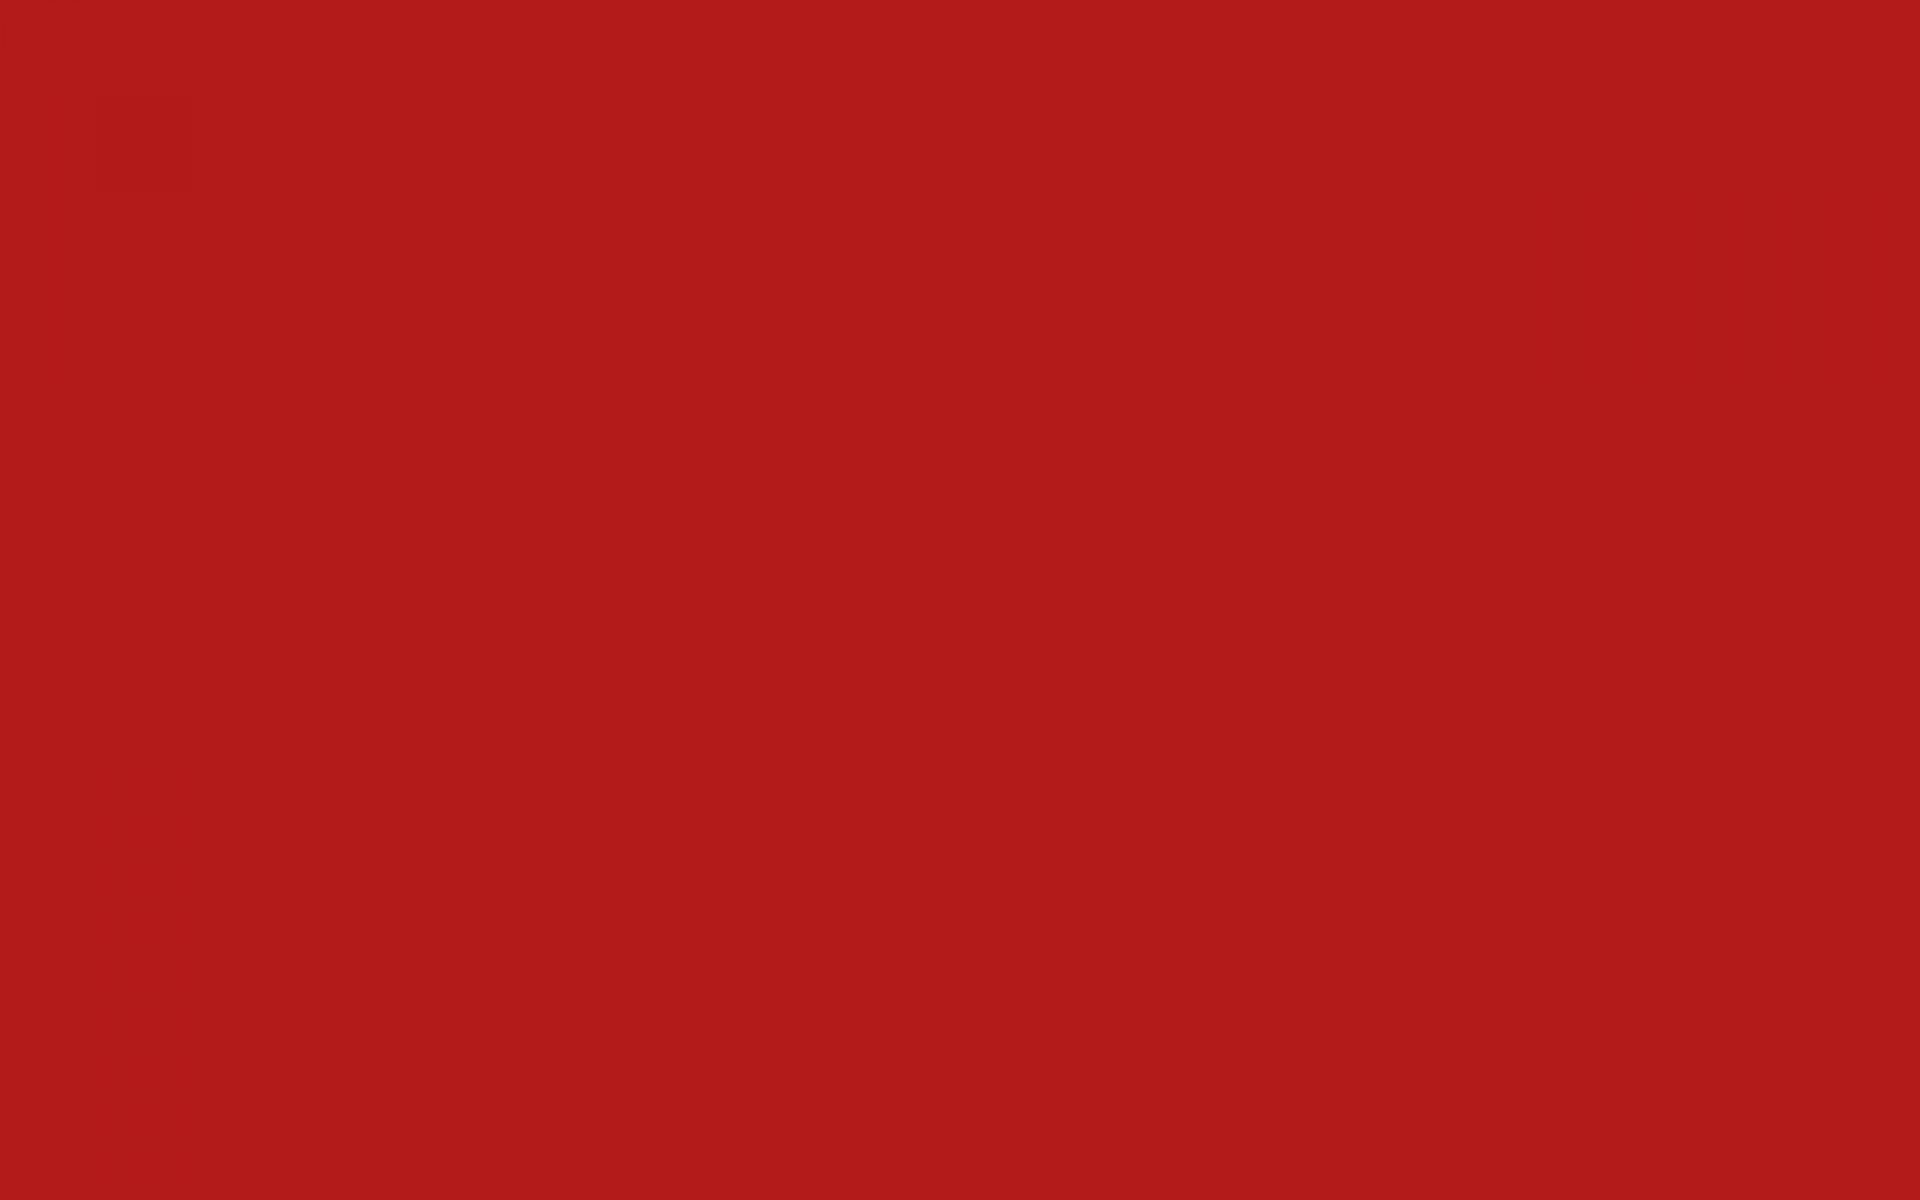 Background đỏ trơn là một lựa chọn hoàn hảo để tạo nét đẹp độc đáo cho sản phẩm của bạn. Với sự kết hợp giữa màu đỏ trơn và thiết kế tinh tế, background đỏ trơn sẽ giúp sản phẩm của bạn nổi bật hơn trong đám đông. Mọi người đều sẽ nhìn thấy sản phẩm của bạn với nét đẹp cuốn hút và độc đáo.